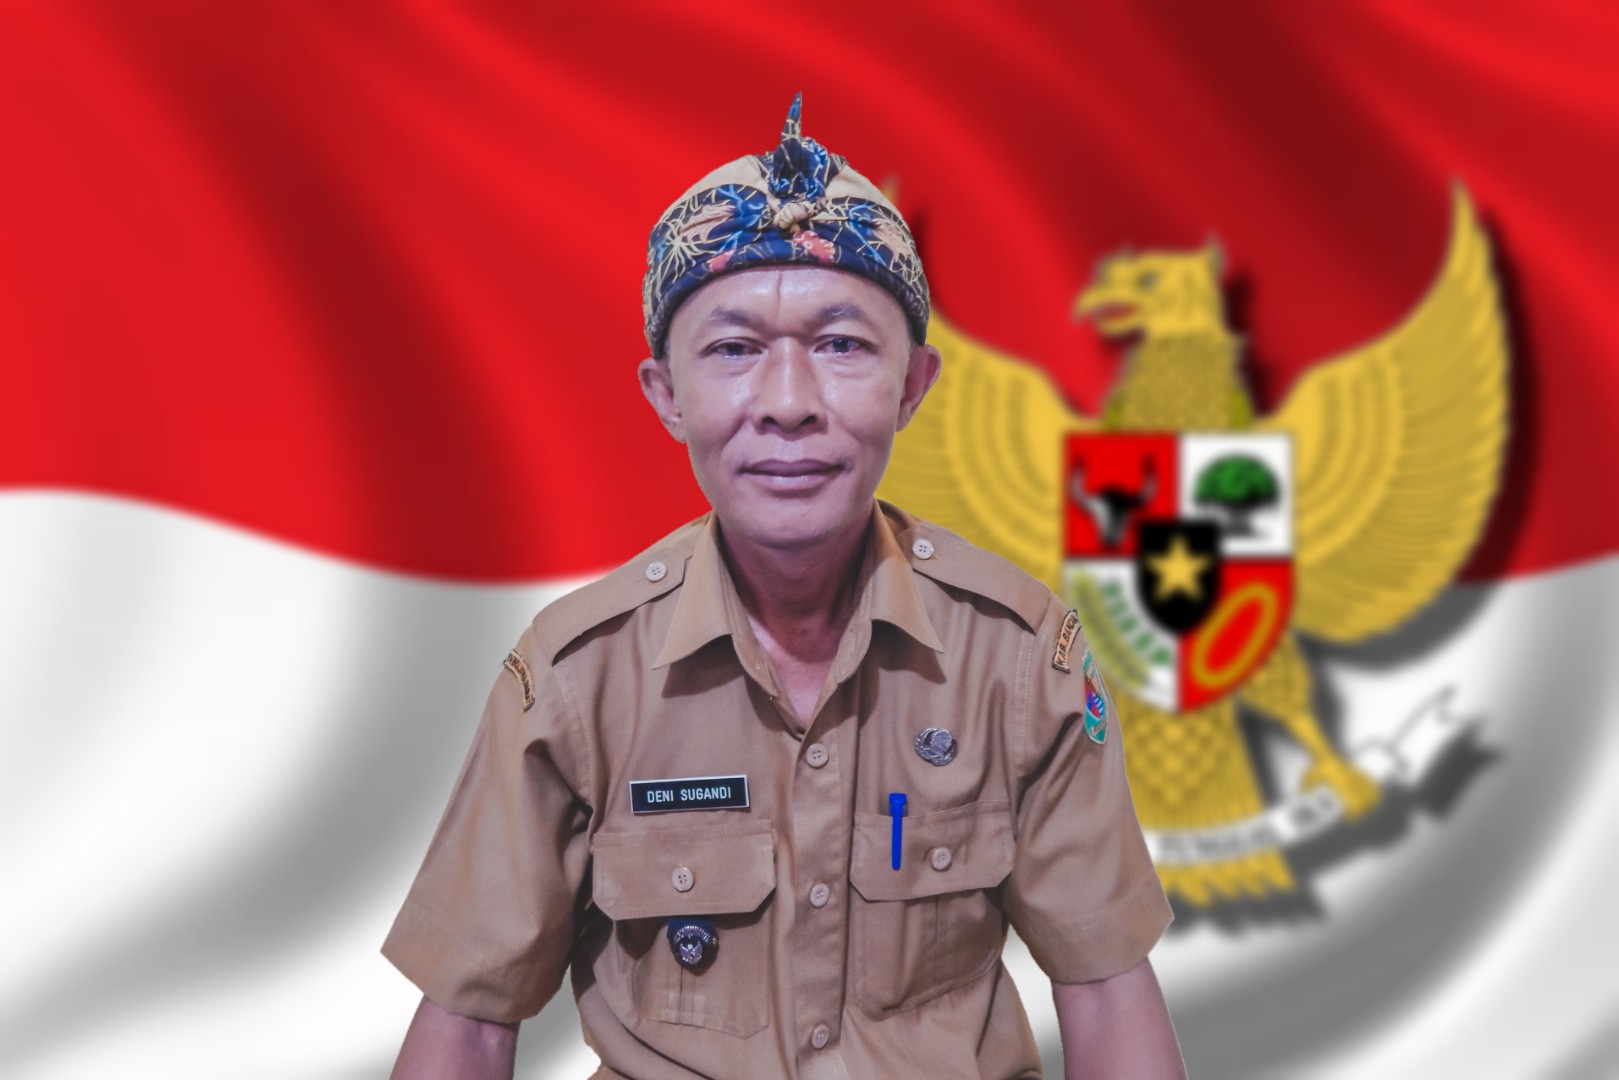 Deni Sugandi, Kepala Desa Sukamulya Kec. Rancaekek Kab. Bandung